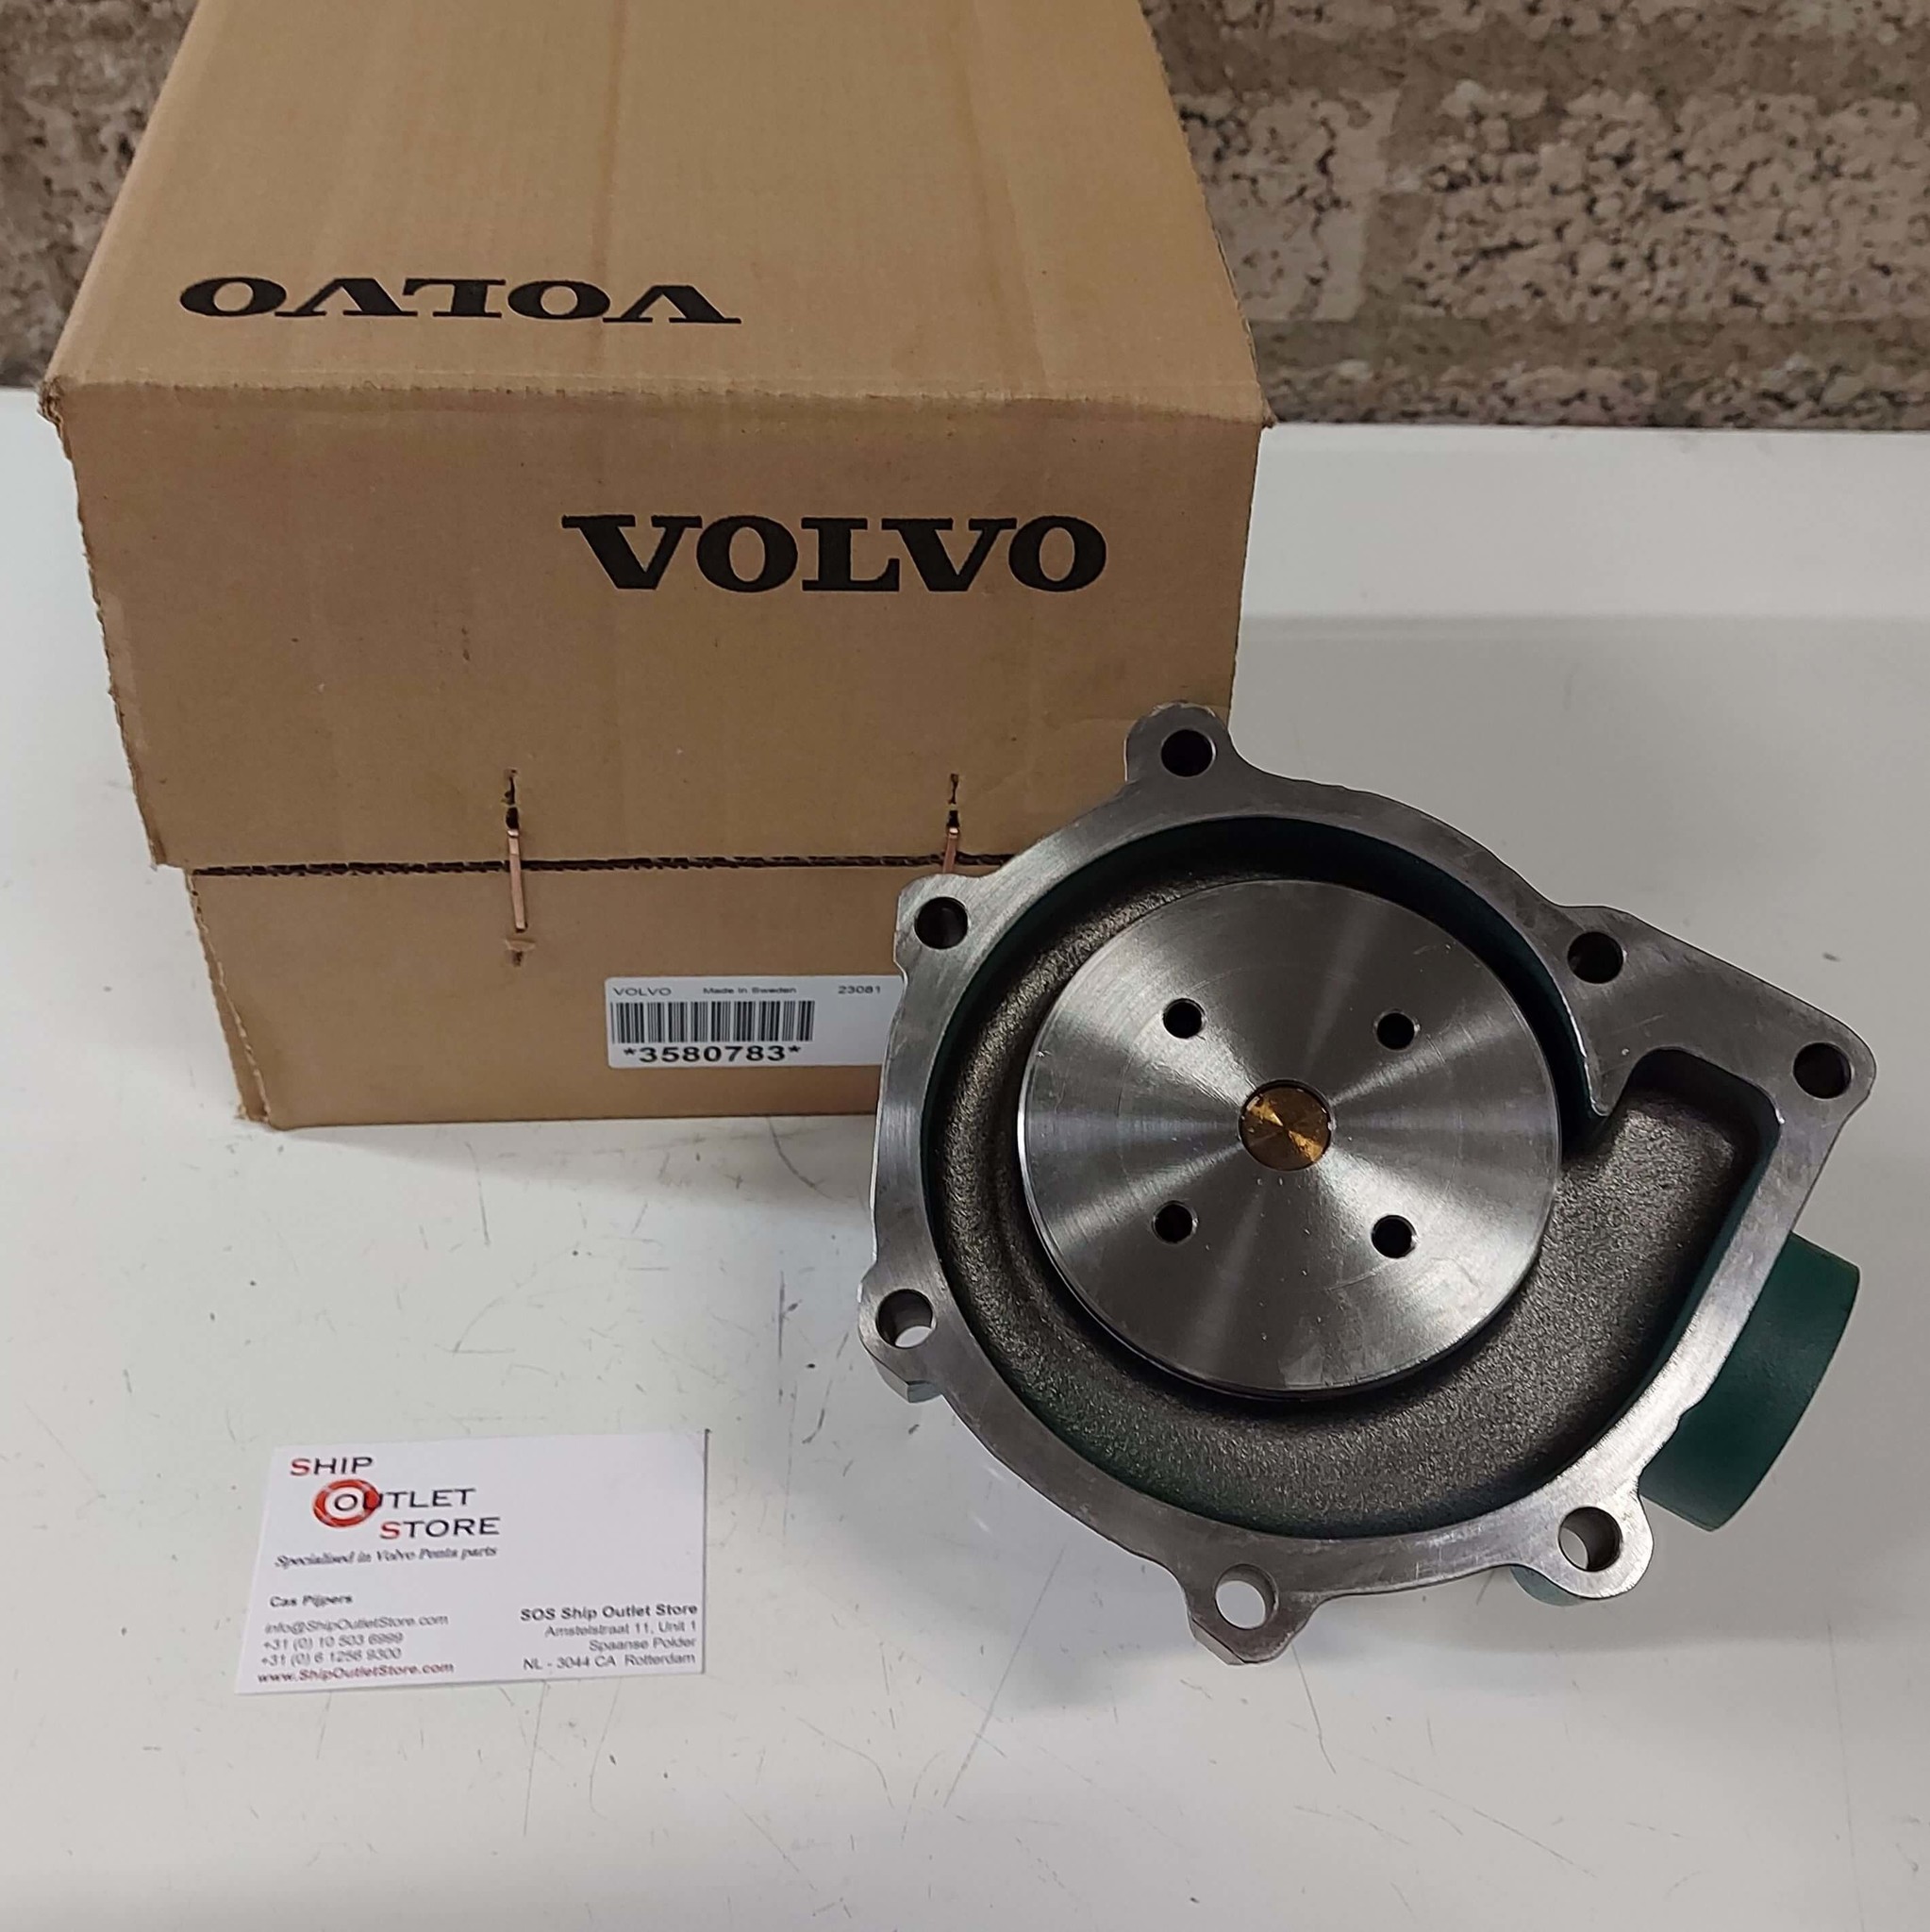 Circulation pump Volvo Penta 3580782 - 859127